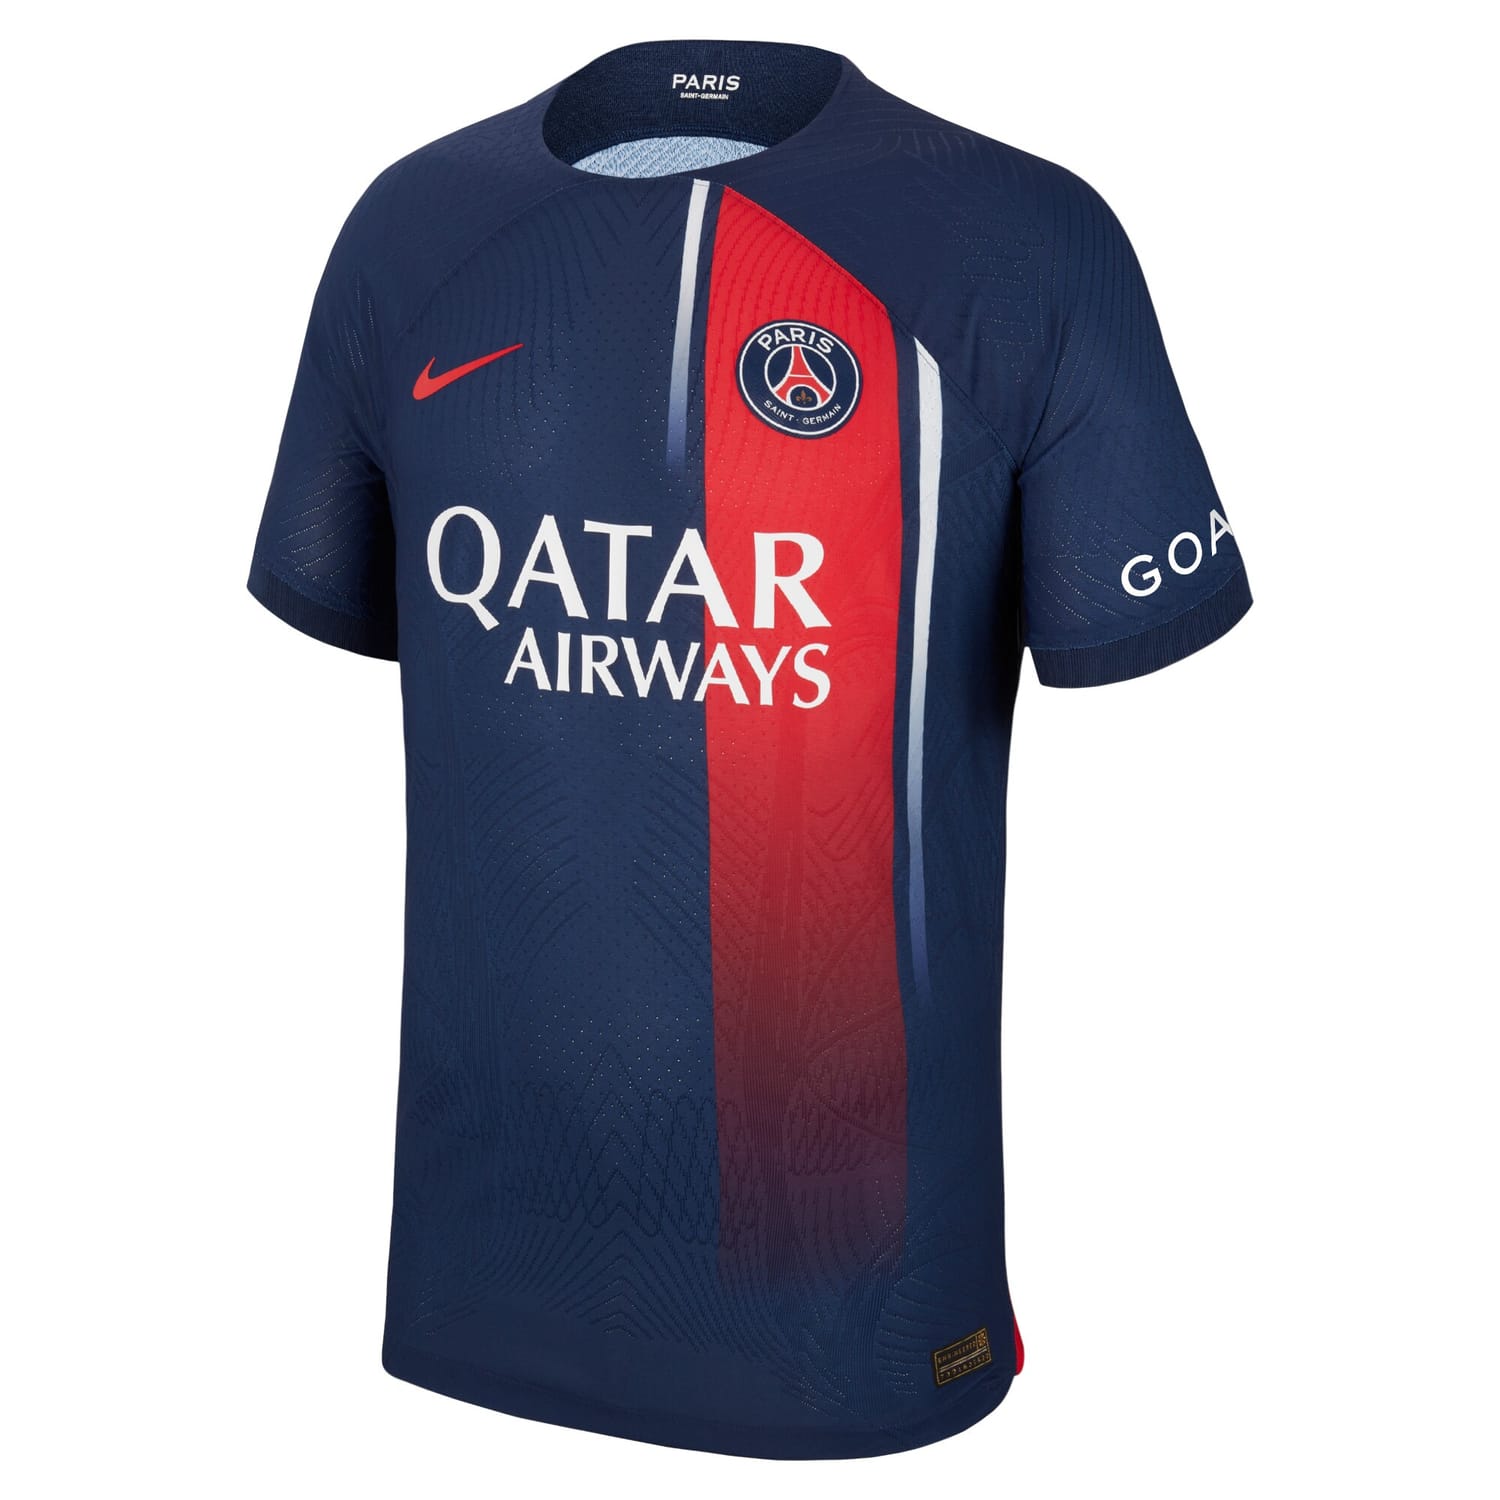 Ligue 1 Paris Saint-Germain Home Authentic Jersey Shirt 2023-24 player Renato Sanches 18 printing for Men